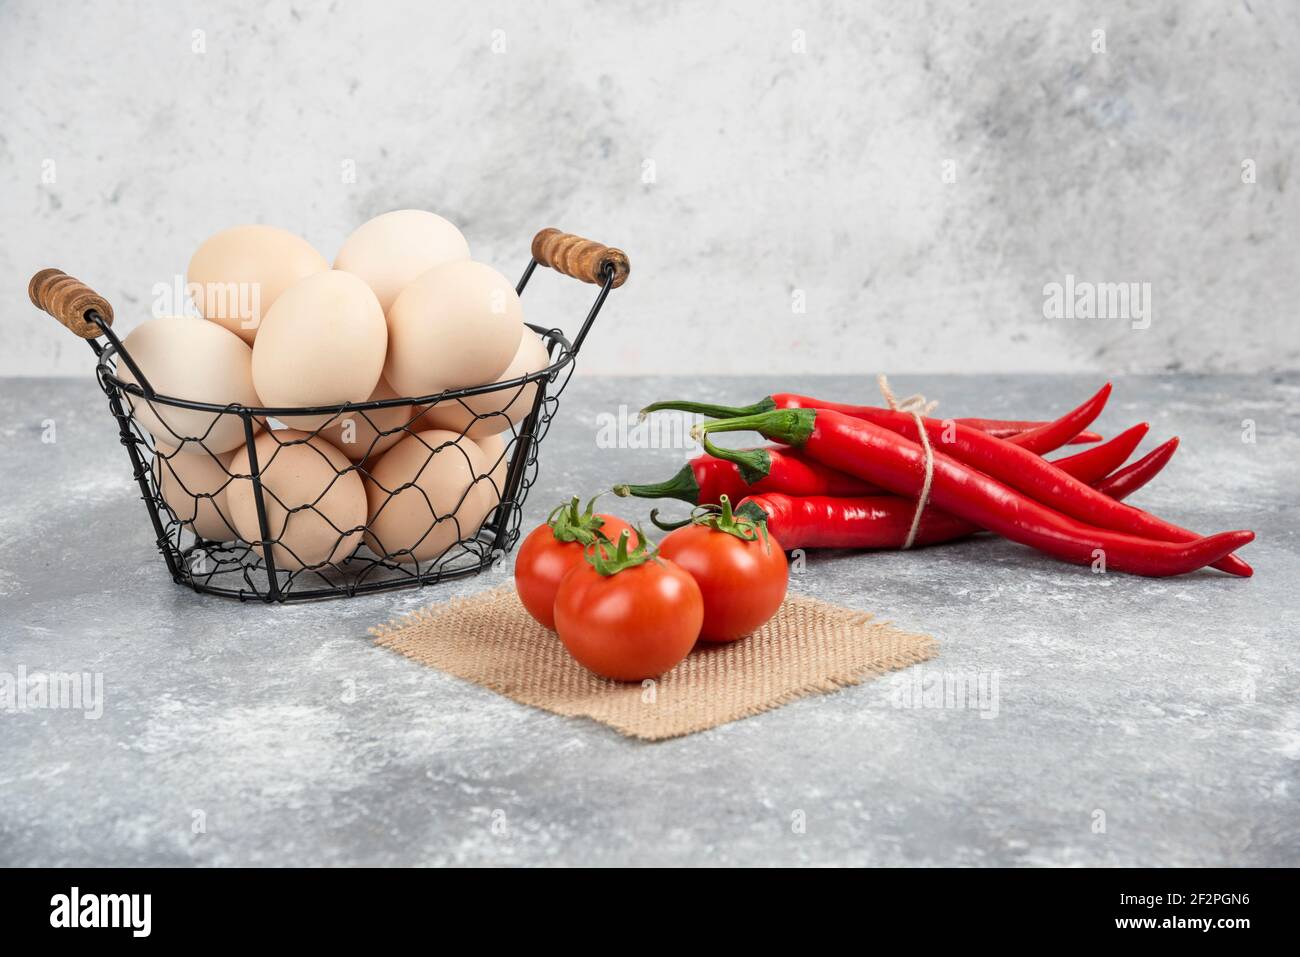 Korb mit frischen ungekochten Eiern, Chilischoten und Tomaten auf Marmorboden Stockfoto